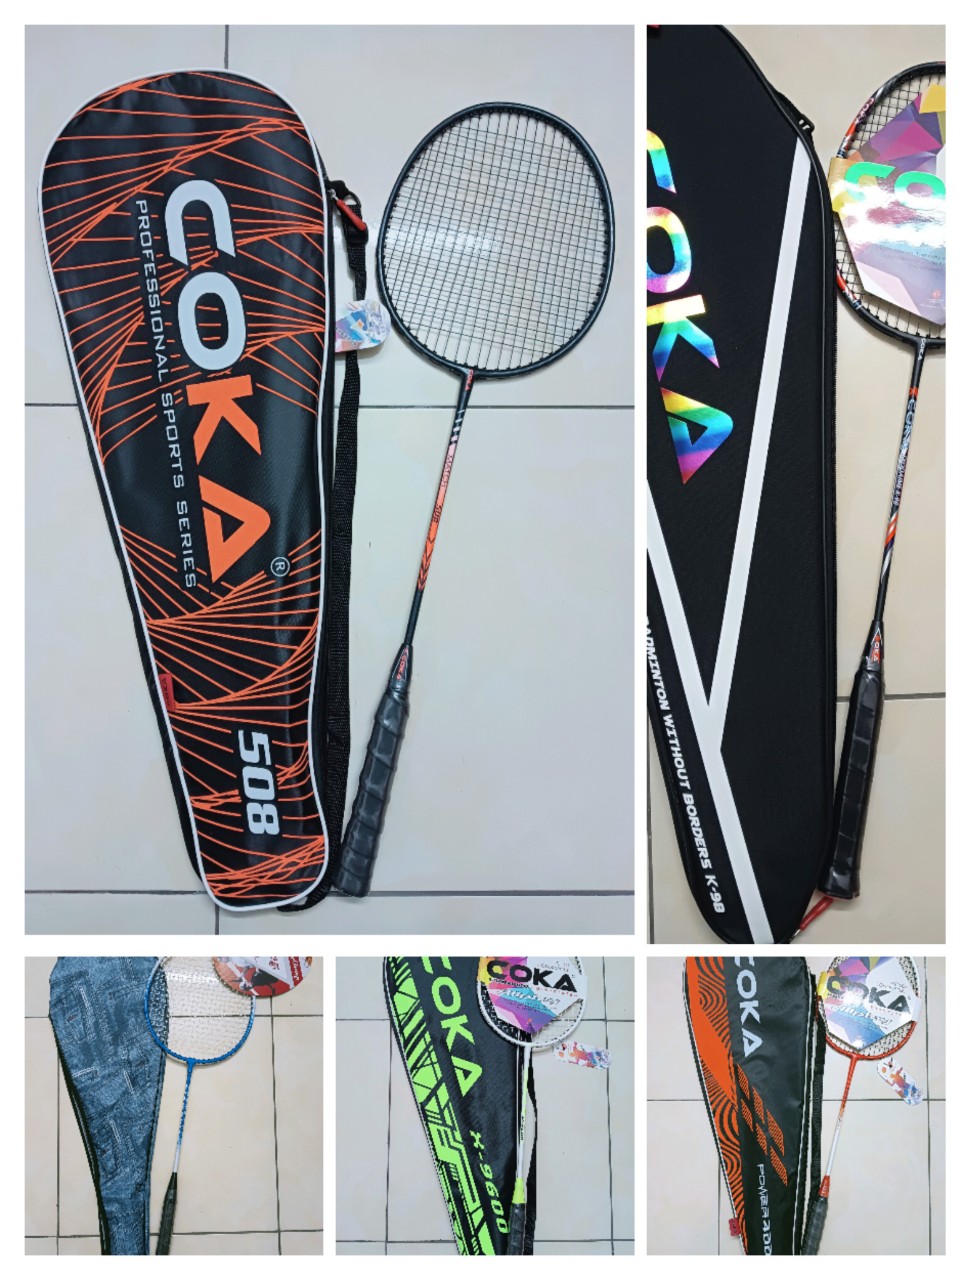 Đôi vợt COKA chất lượng tốt giá rẻ gồm bao đựng 2 vợt